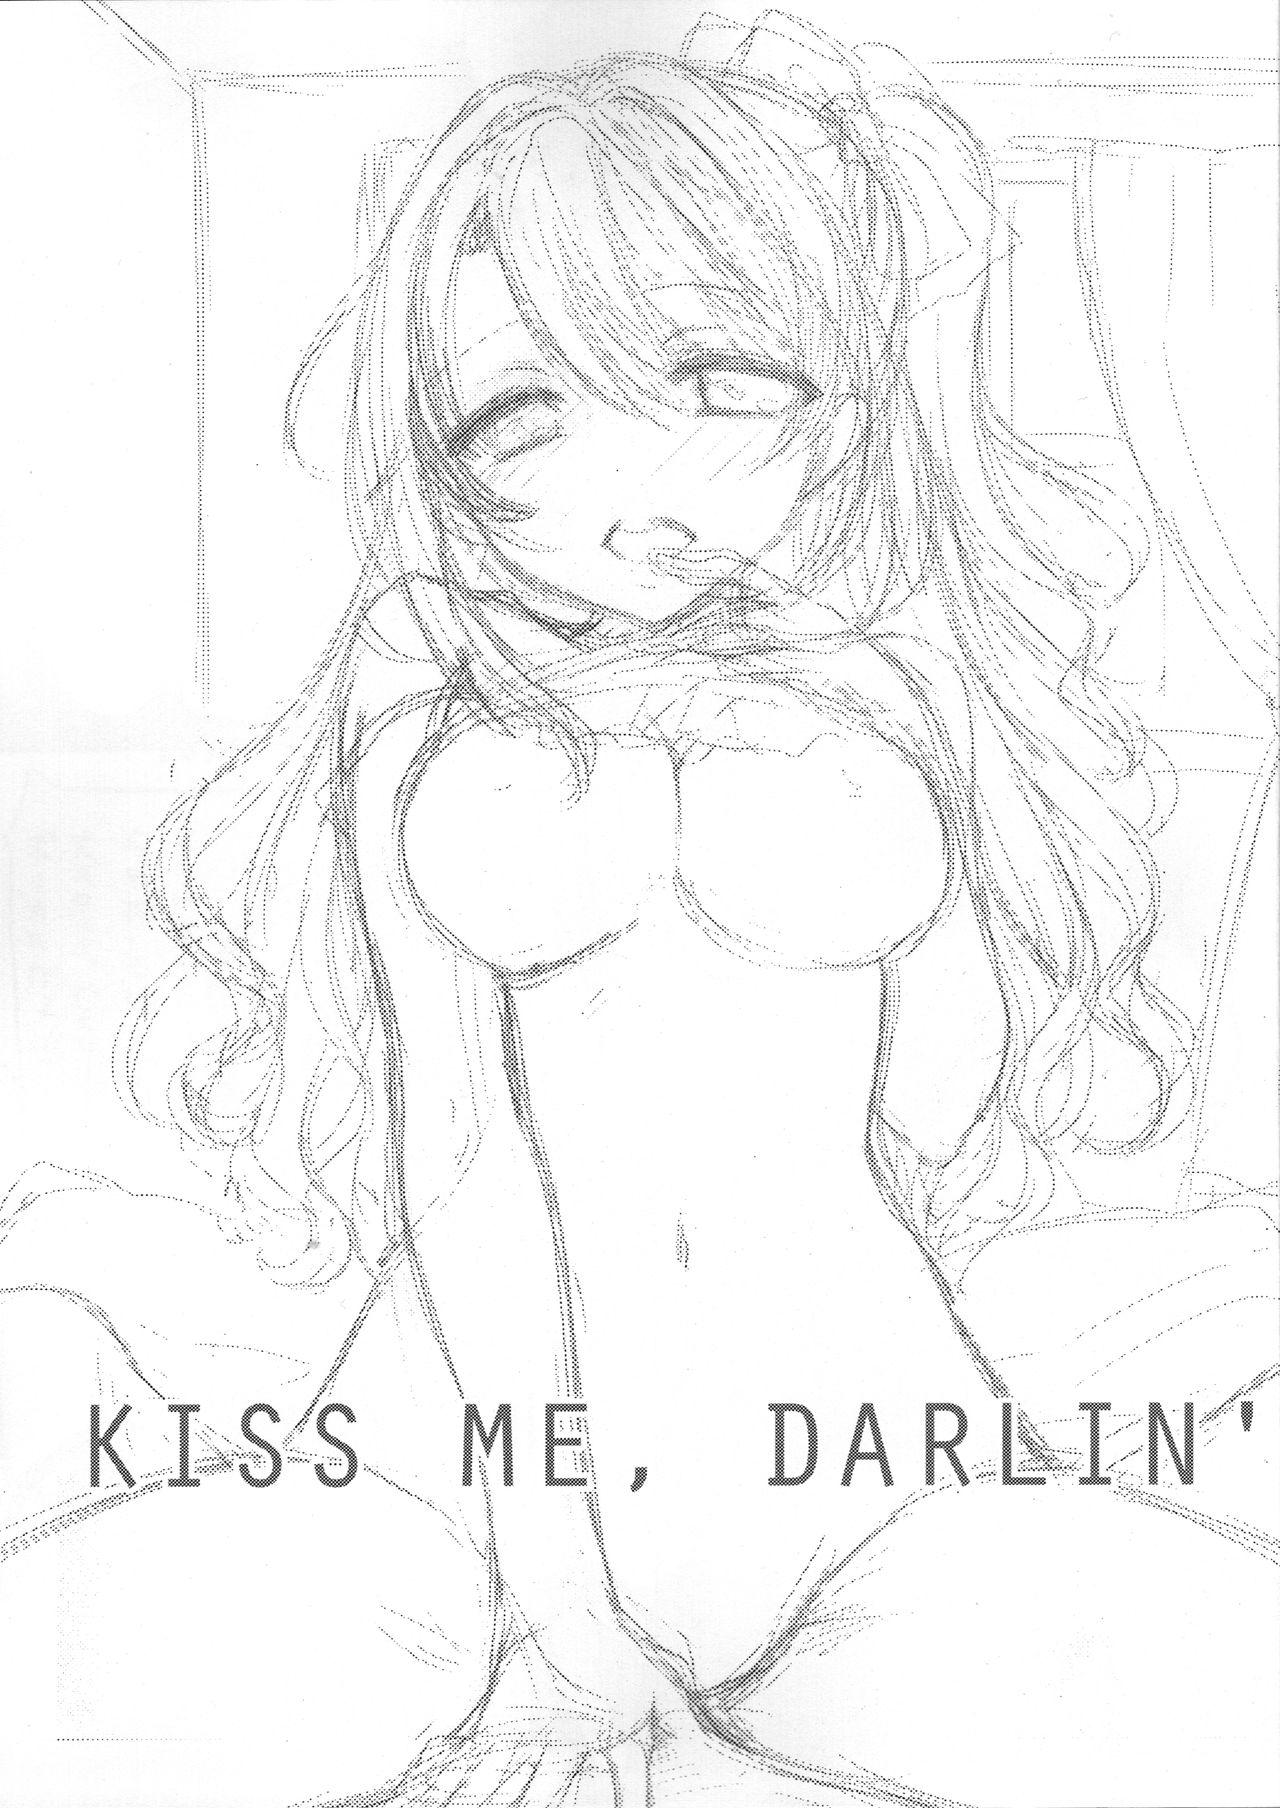 KISS ME, DARLIN' 2